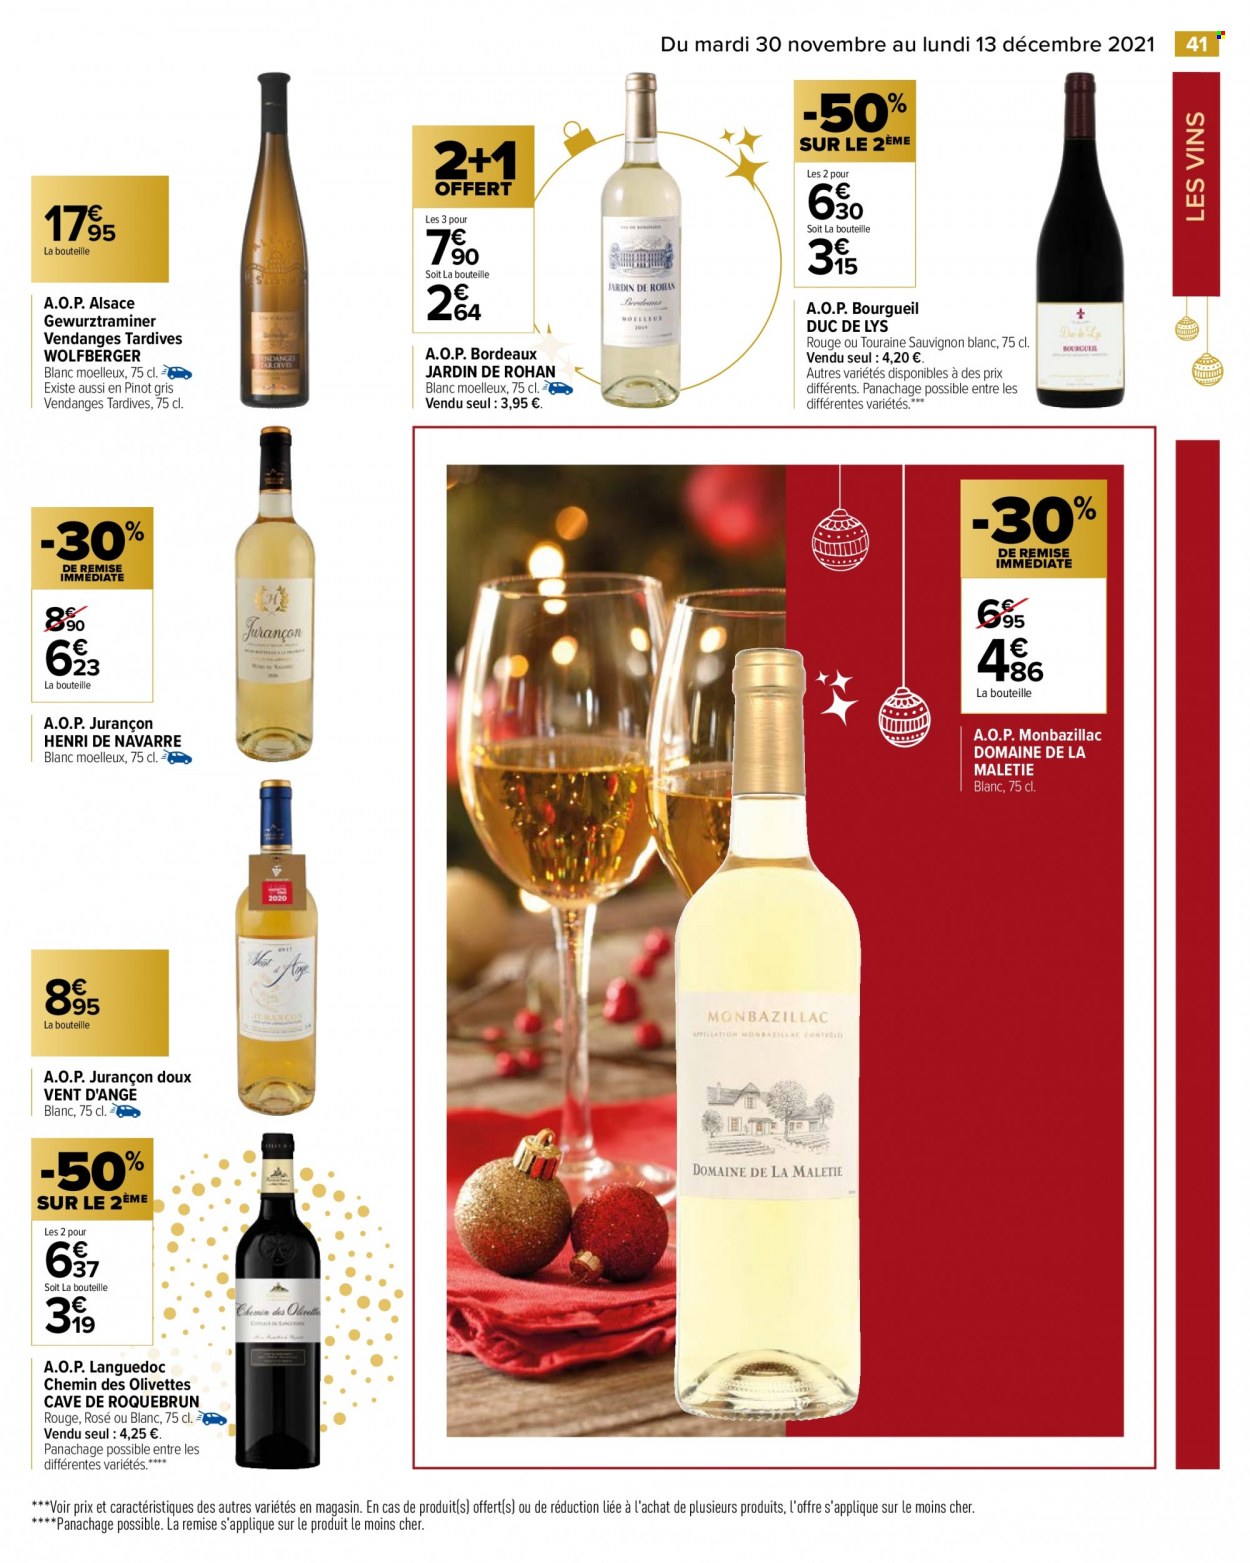 thumbnail - Catalogue Carrefour Hypermarchés - 30/11/2021 - 13/12/2021 - Produits soldés - alcool, Bordeaux, vin blanc, vin rouge, Sauvignon Blanc, Pinot Gris, Cabernet Sauvignon. Page 49.